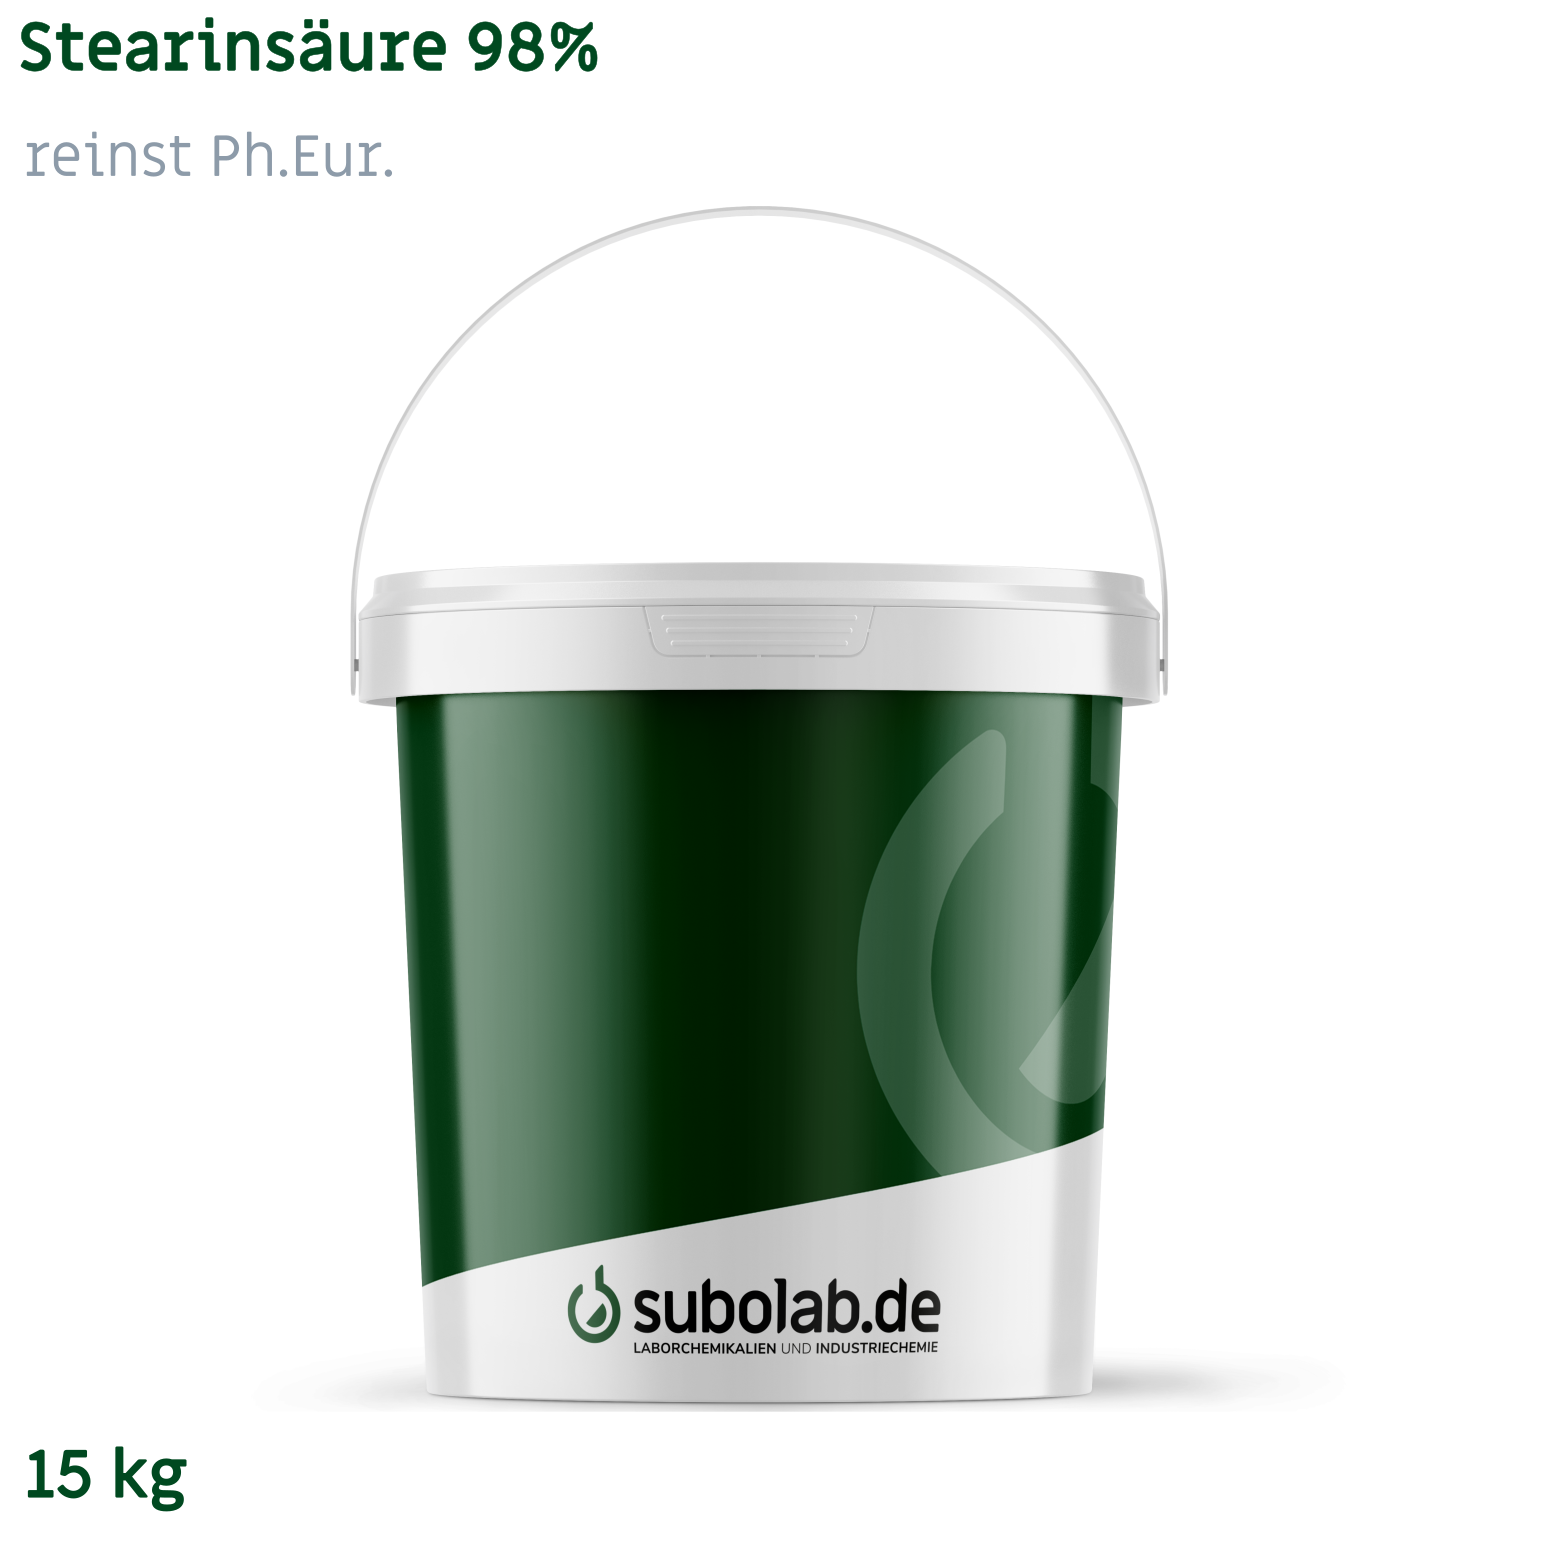 Bild von Stearinsäure 98% reinst Ph.Eur. (15 kg)